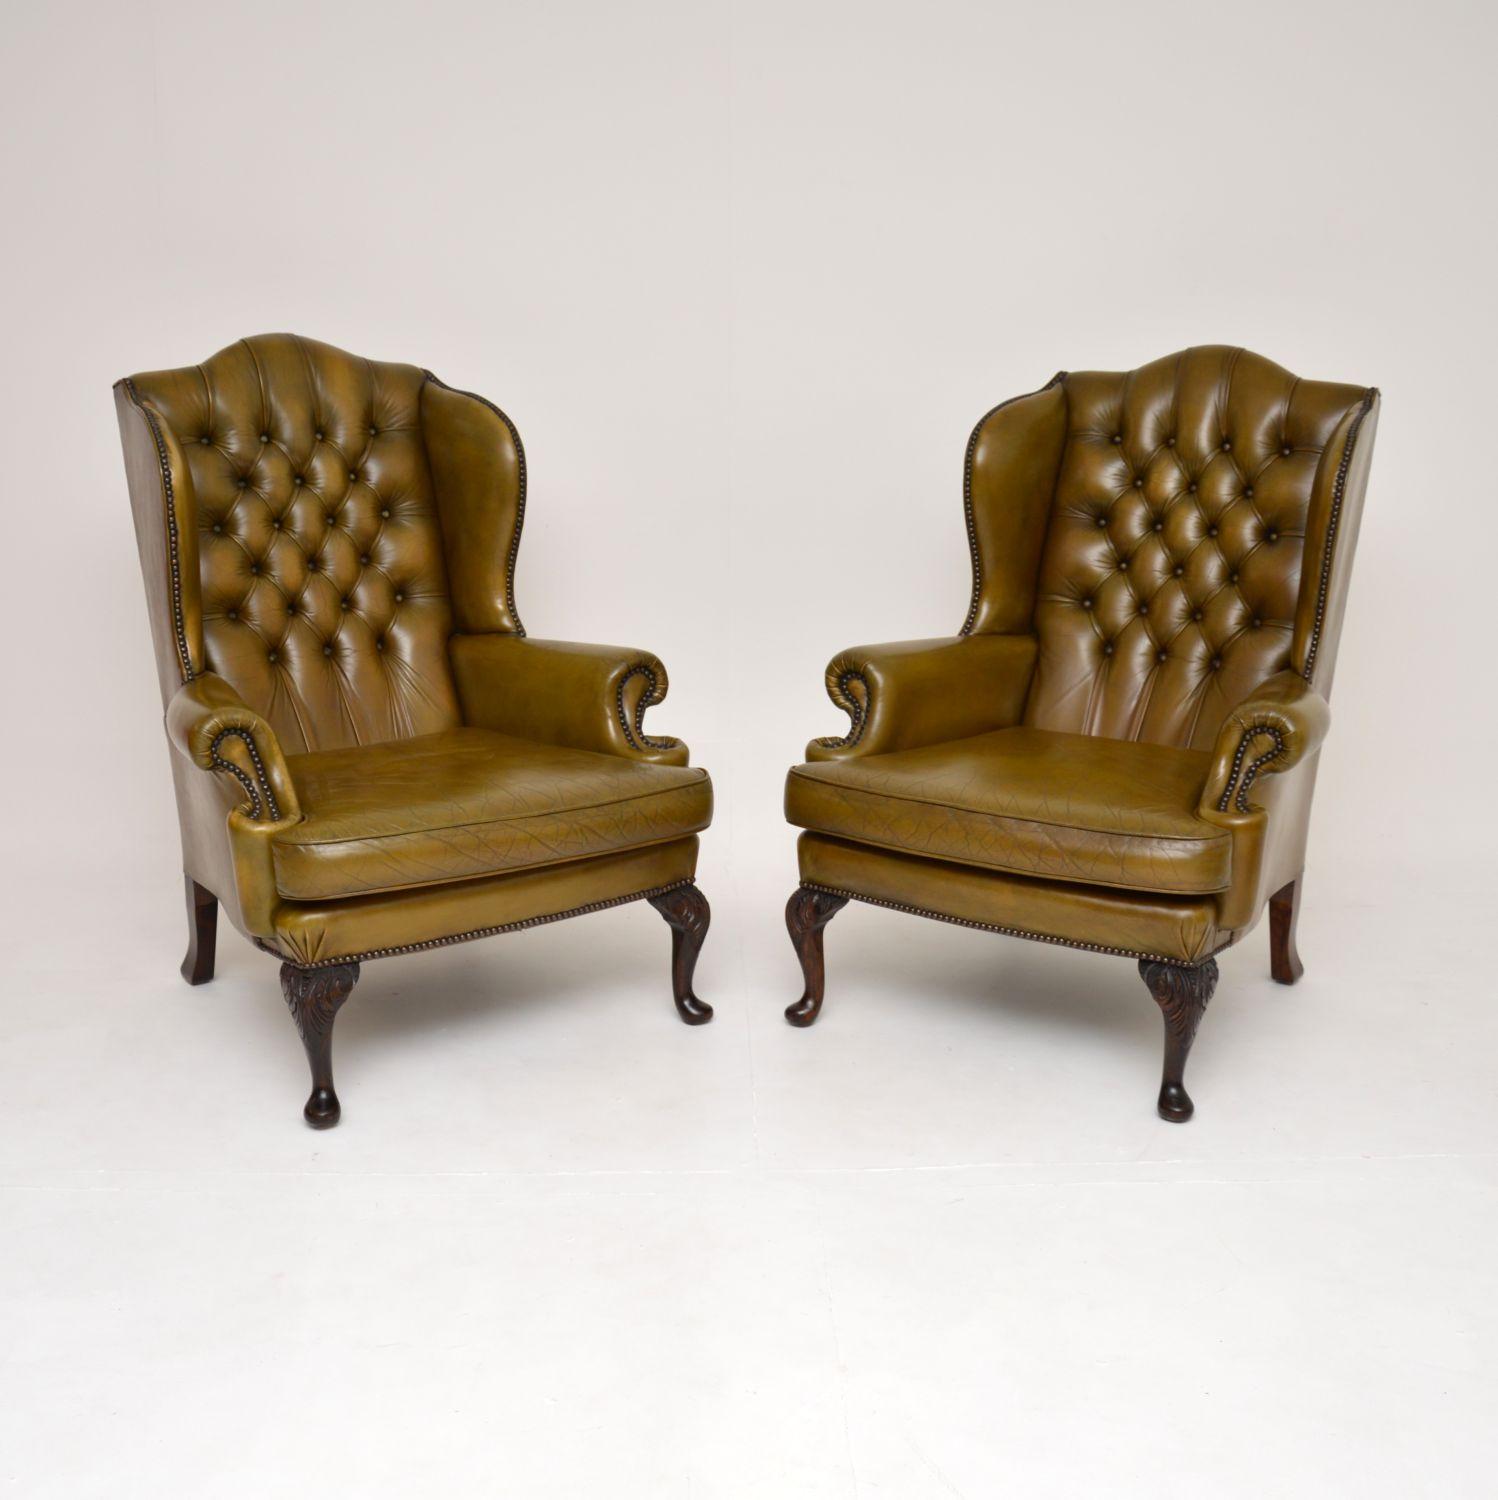 Une fantastique paire de fauteuils anciens en cuir vert à dossier en forme d'aile. Fabriqués en Angleterre, ils datent des années 1930.

La qualité est superbe et ils sont extrêmement confortables pour se détendre. Le cuir vert a une couleur et une